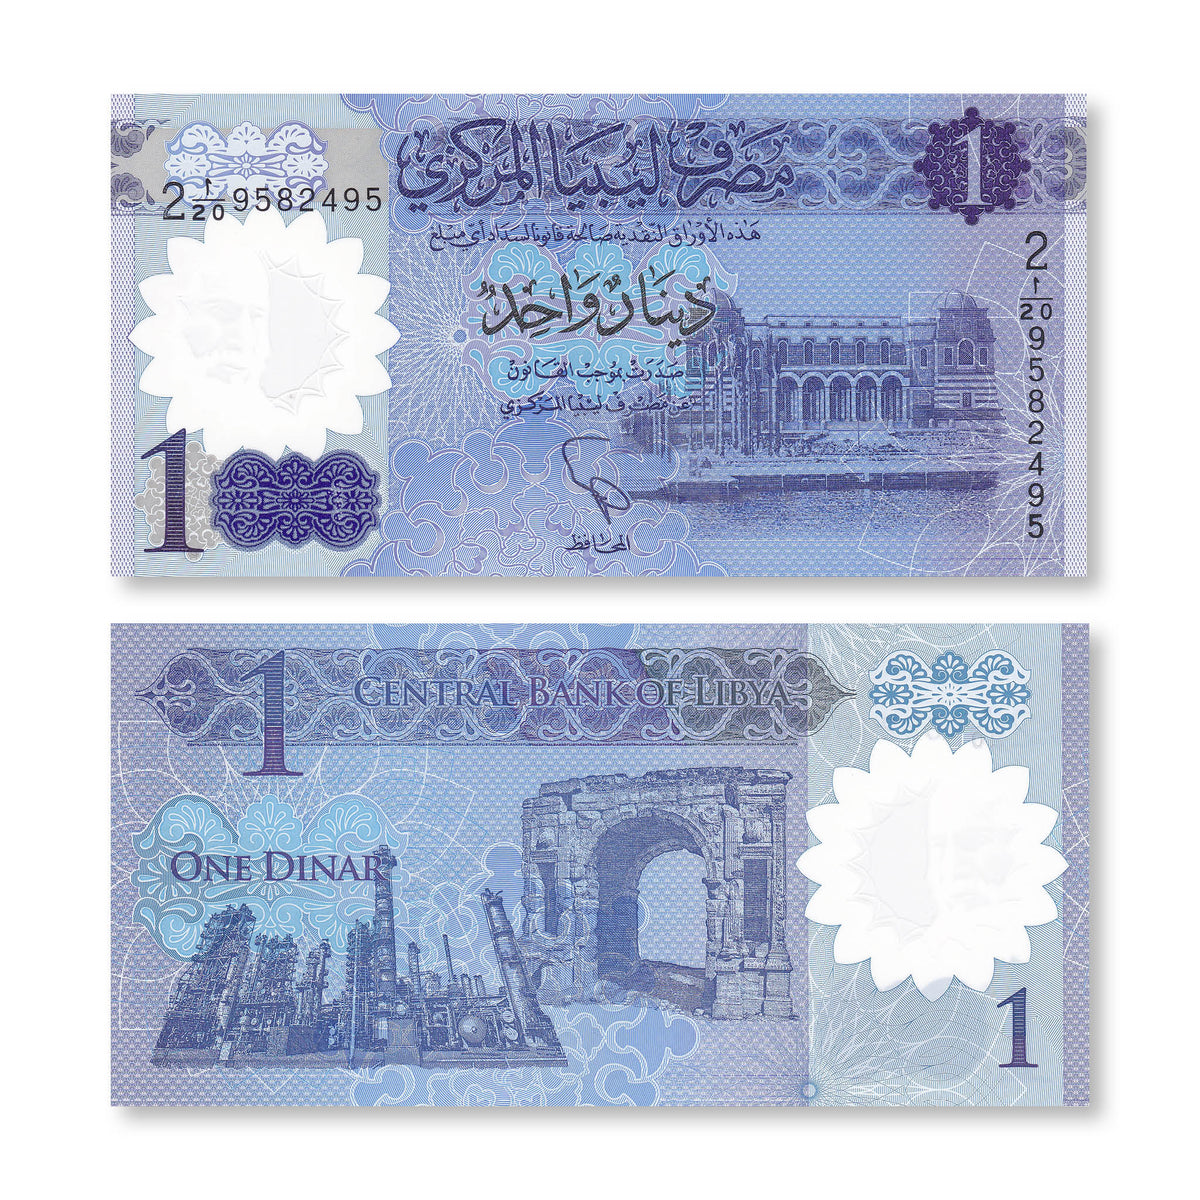 Libya 1 Dinar, 2019, B550a, UNC - Robert's World Money - World Banknotes